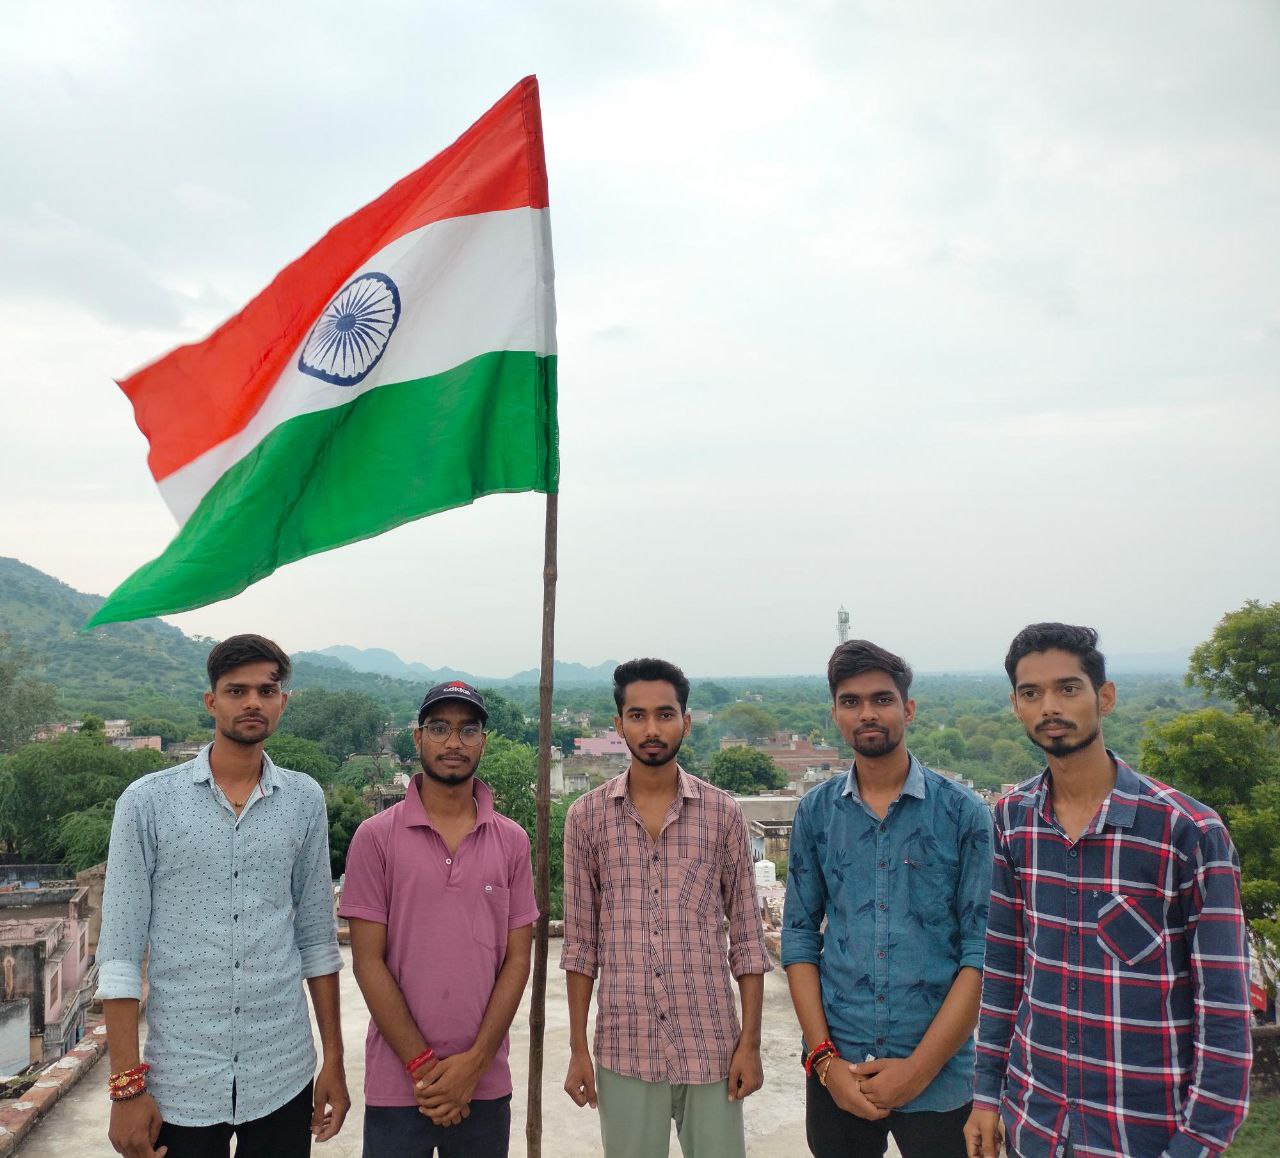 तिरंगा रैली को लेकर युवाओं में जबरदस्त उत्साह, शहर में चहुंओर नजर आएंगे राष्ट्रीय ध्वज